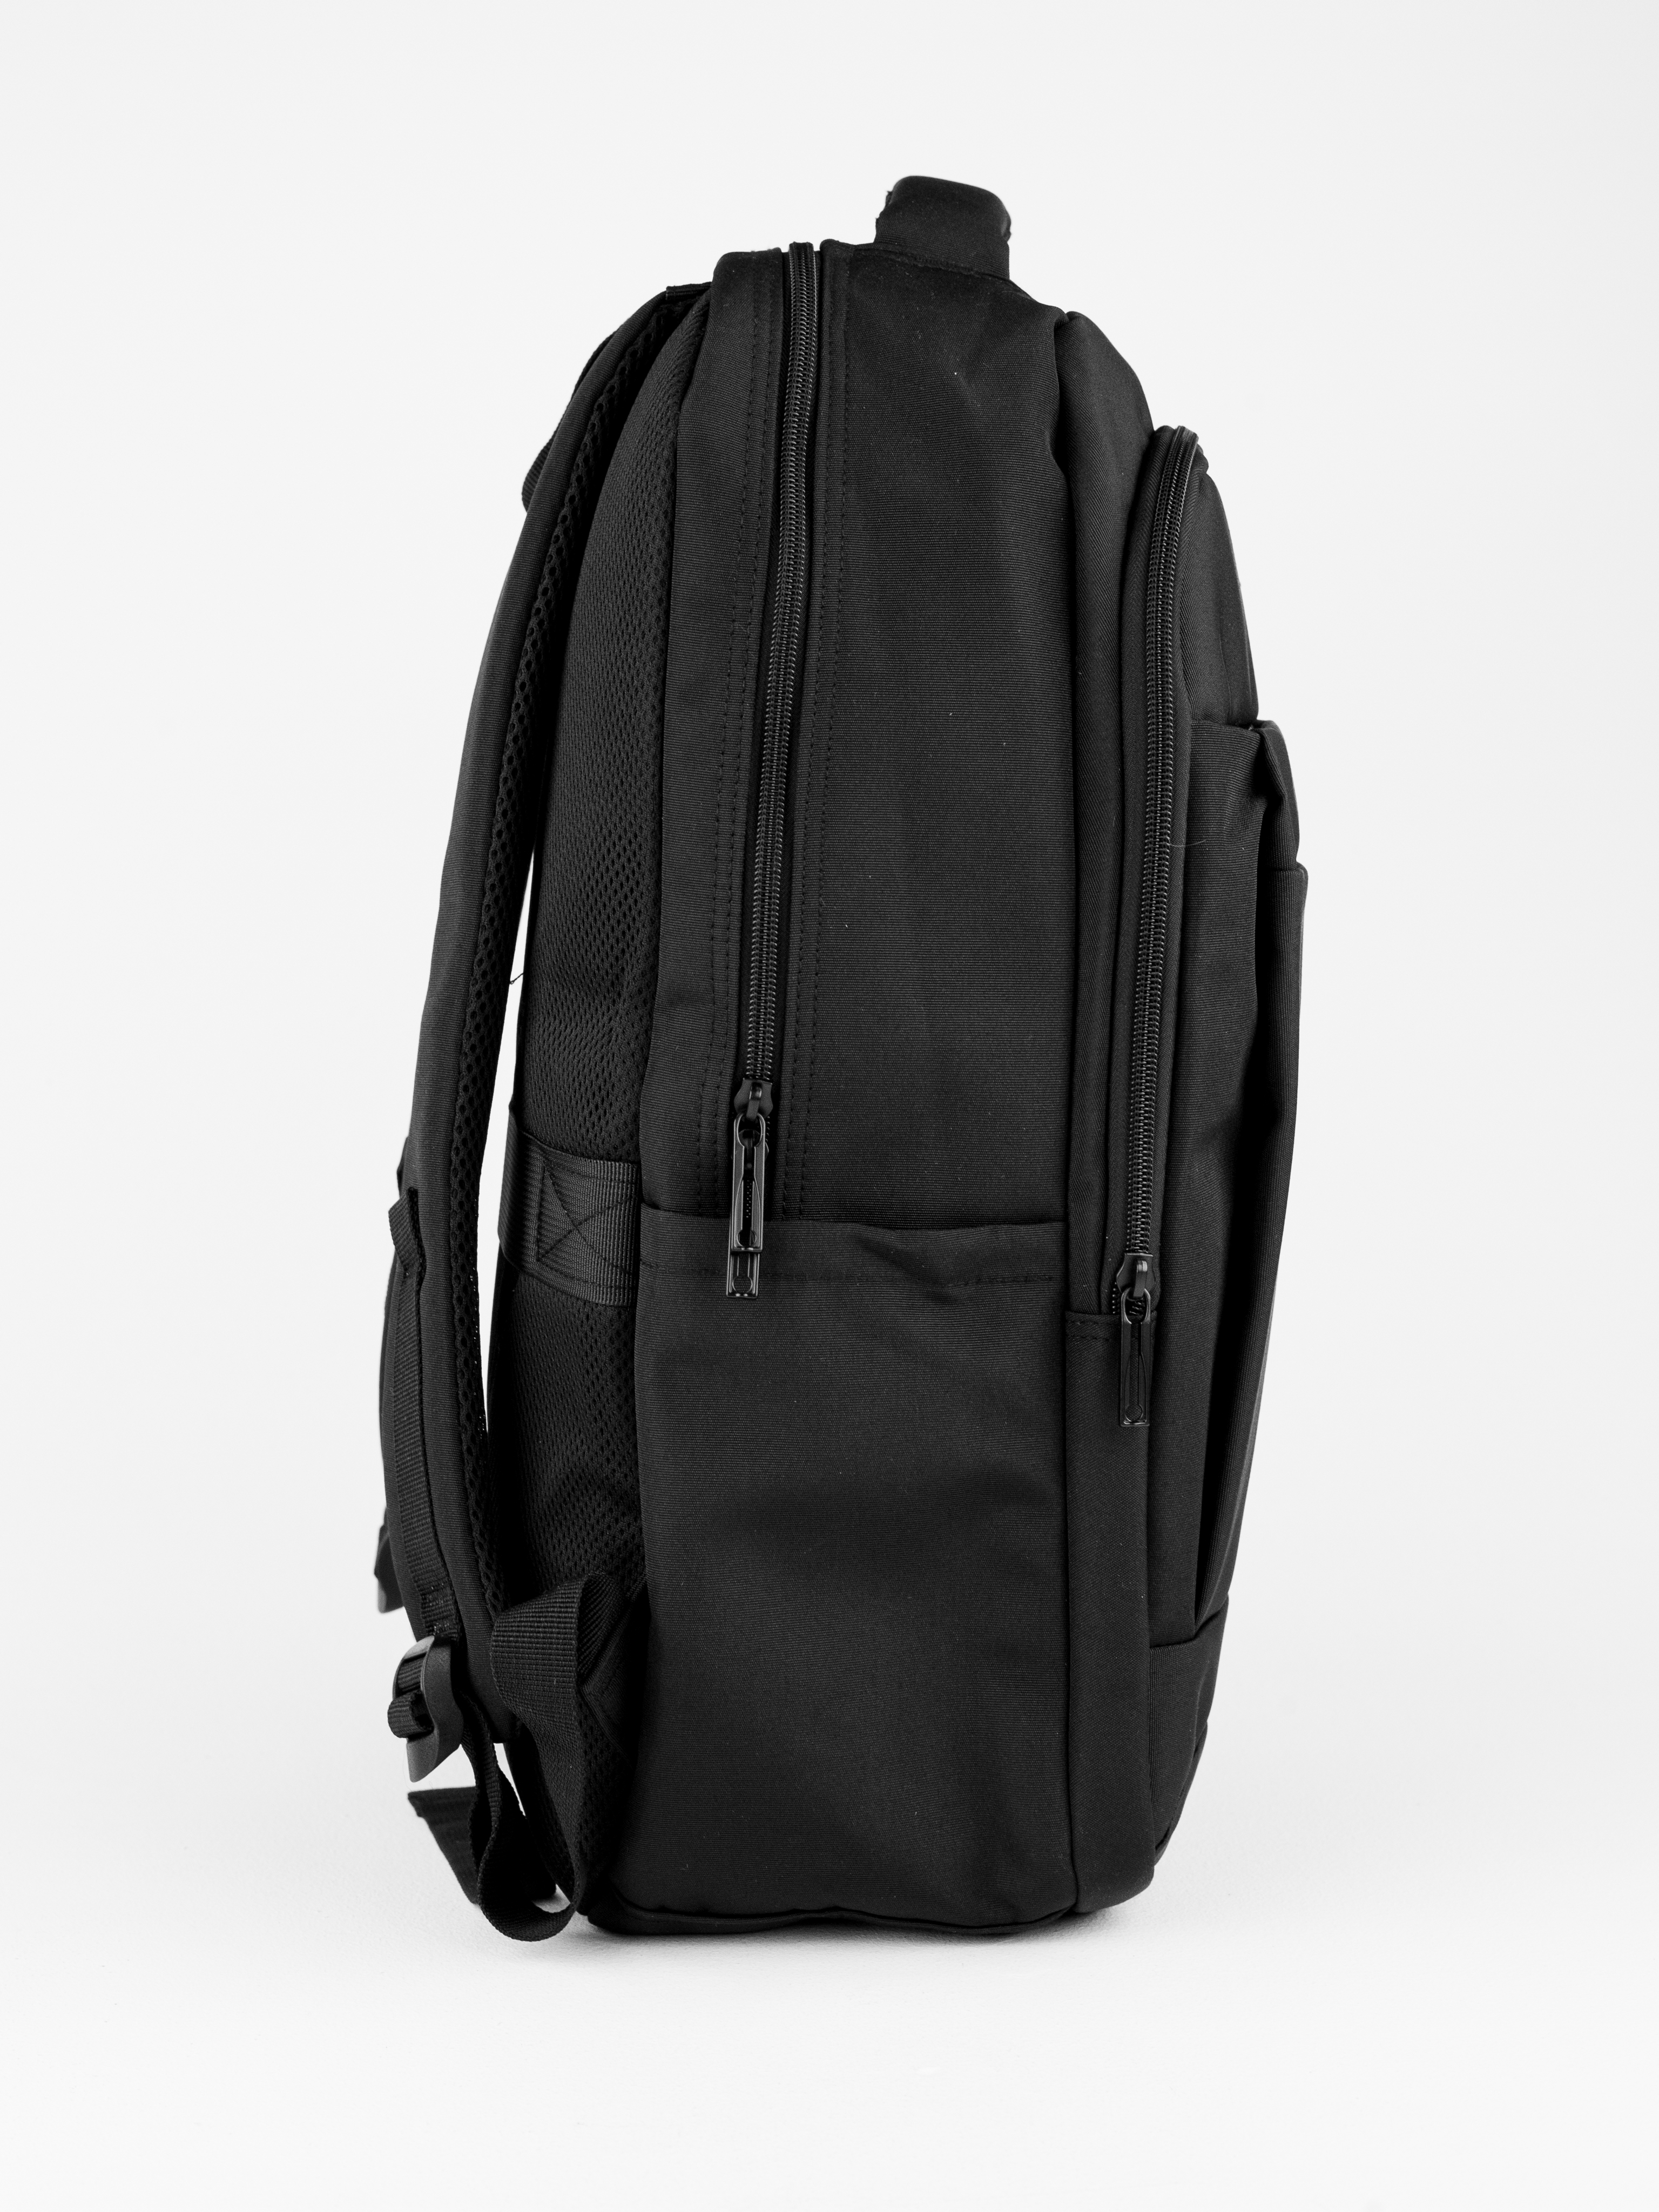 Рюкзак черный DUOYANG школьный подростковый для учебы и спорта - фото 6